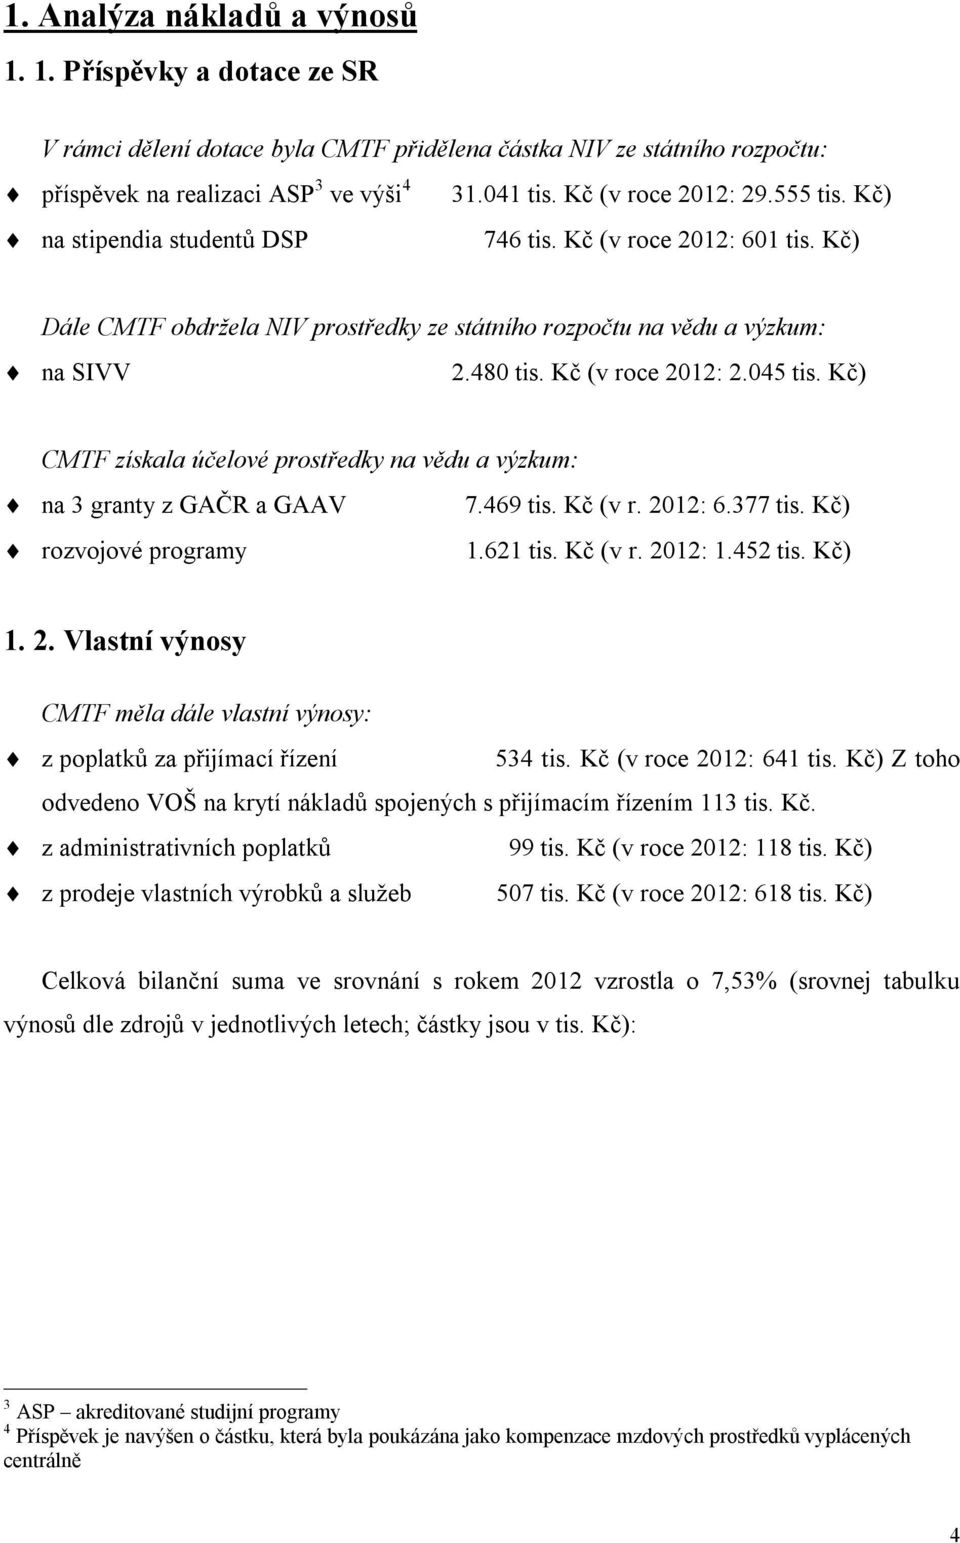 Kč (v roce 2012: 2.045 tis. Kč) CMTF získala účelové prostředky na vědu a výzkum: na 3 granty z GAČR a GAAV 7.469 tis. Kč (v r. 2012: 6.377 tis. Kč) rozvojové programy 1.621 tis. Kč (v r. 2012: 1.